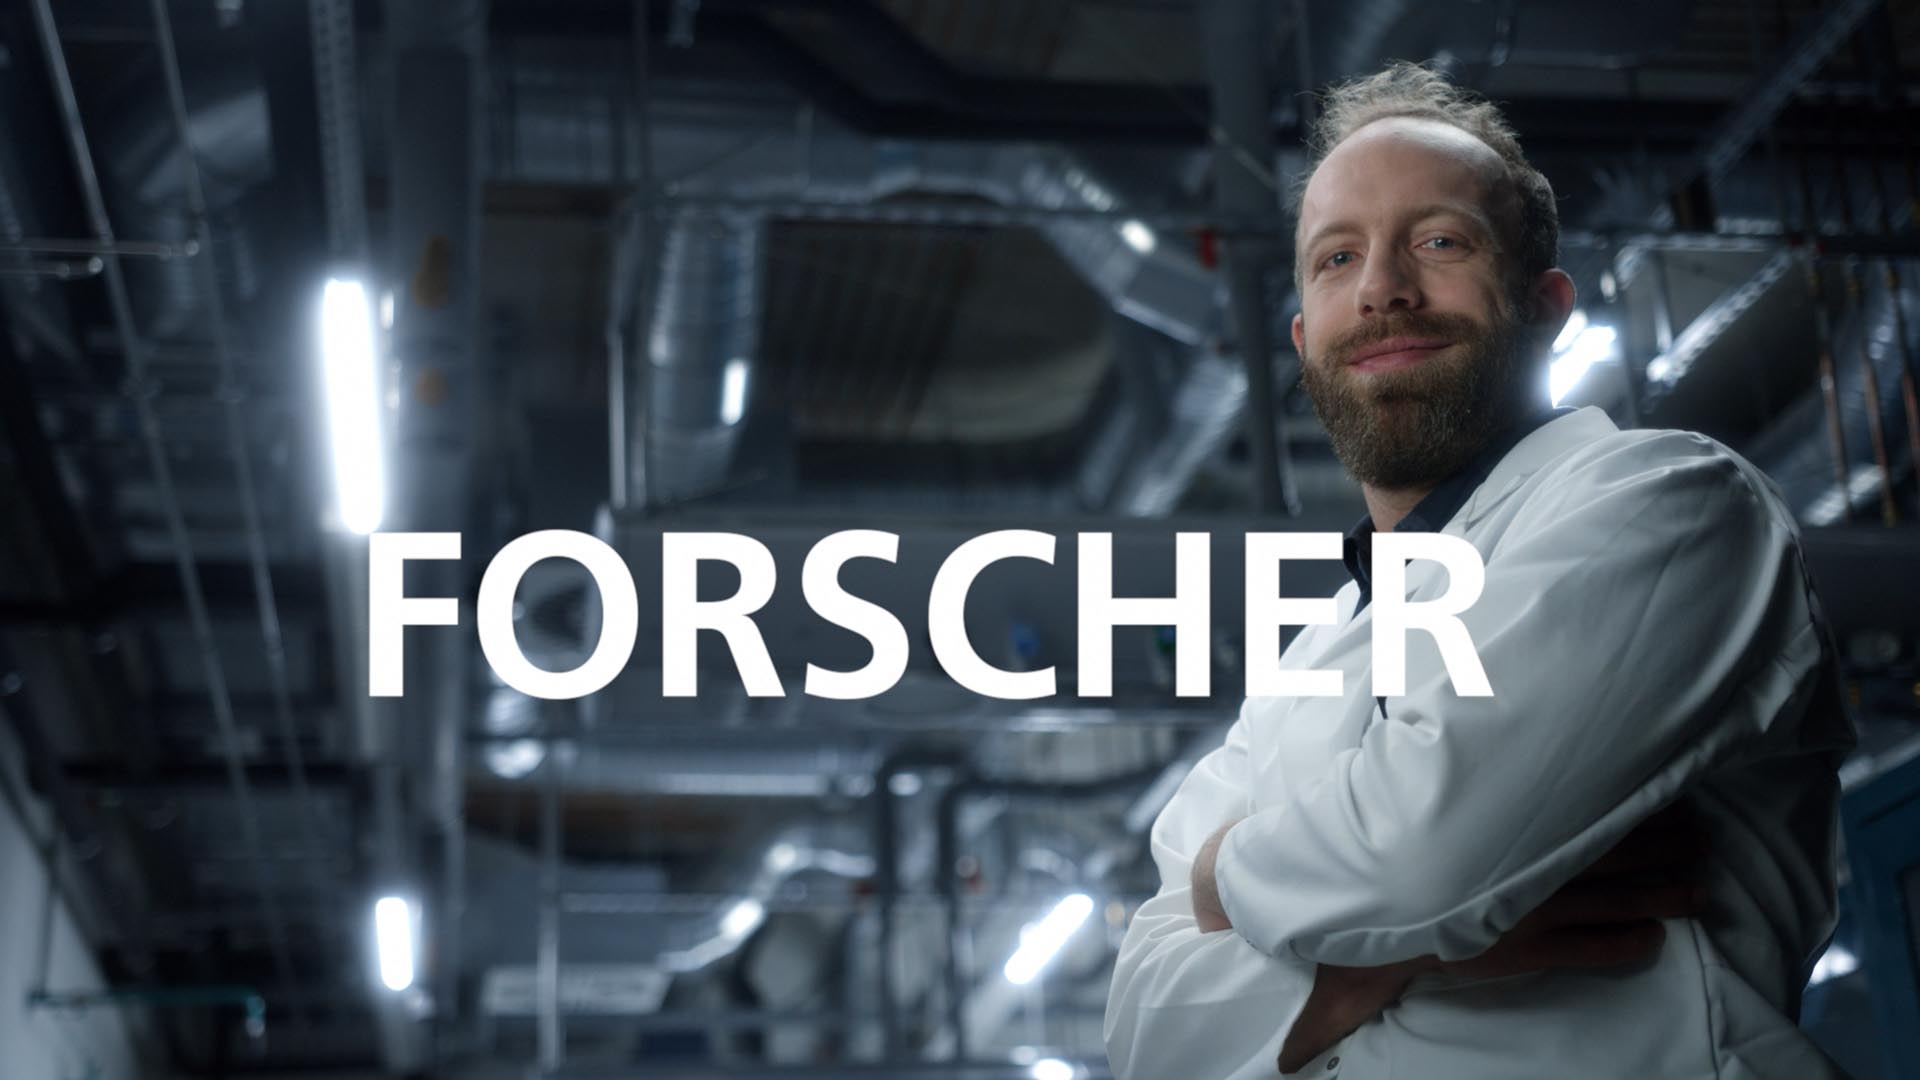 Ausschnitt aus dem Fraunhofer Recruitingspot, Mann steht stolz in einer Werkshalle mit dem Bildtitel 